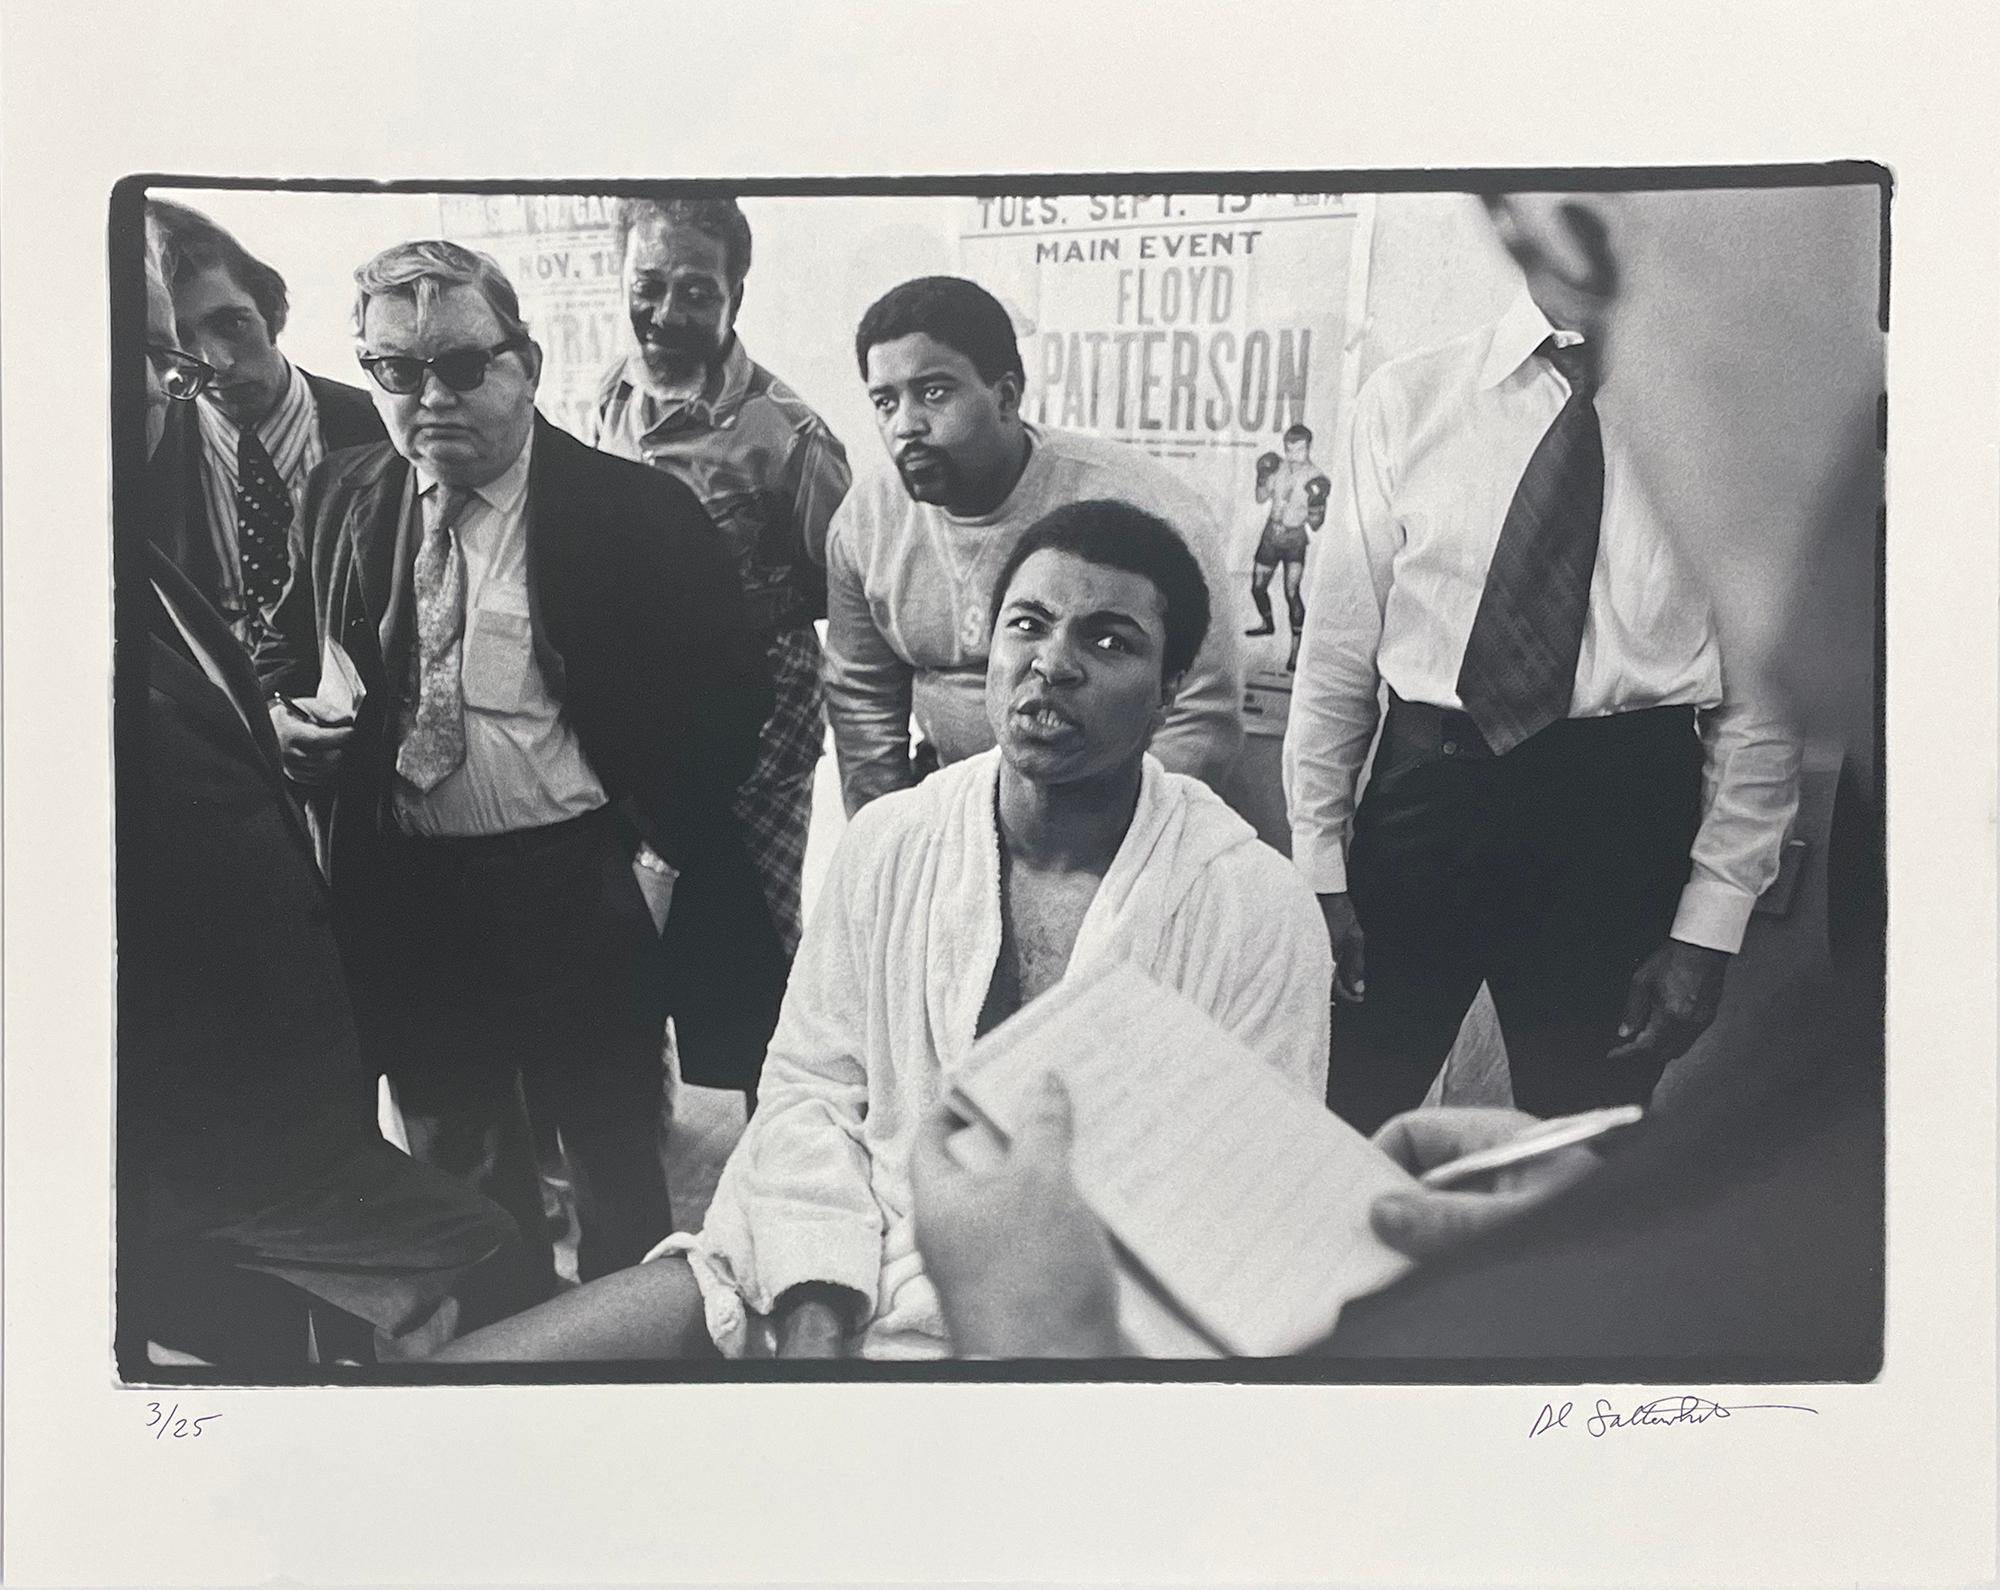 Muhammad Ali - 5th St Gym/Miami Beach, FL (press conference) - Photograph by Al Satterwhite